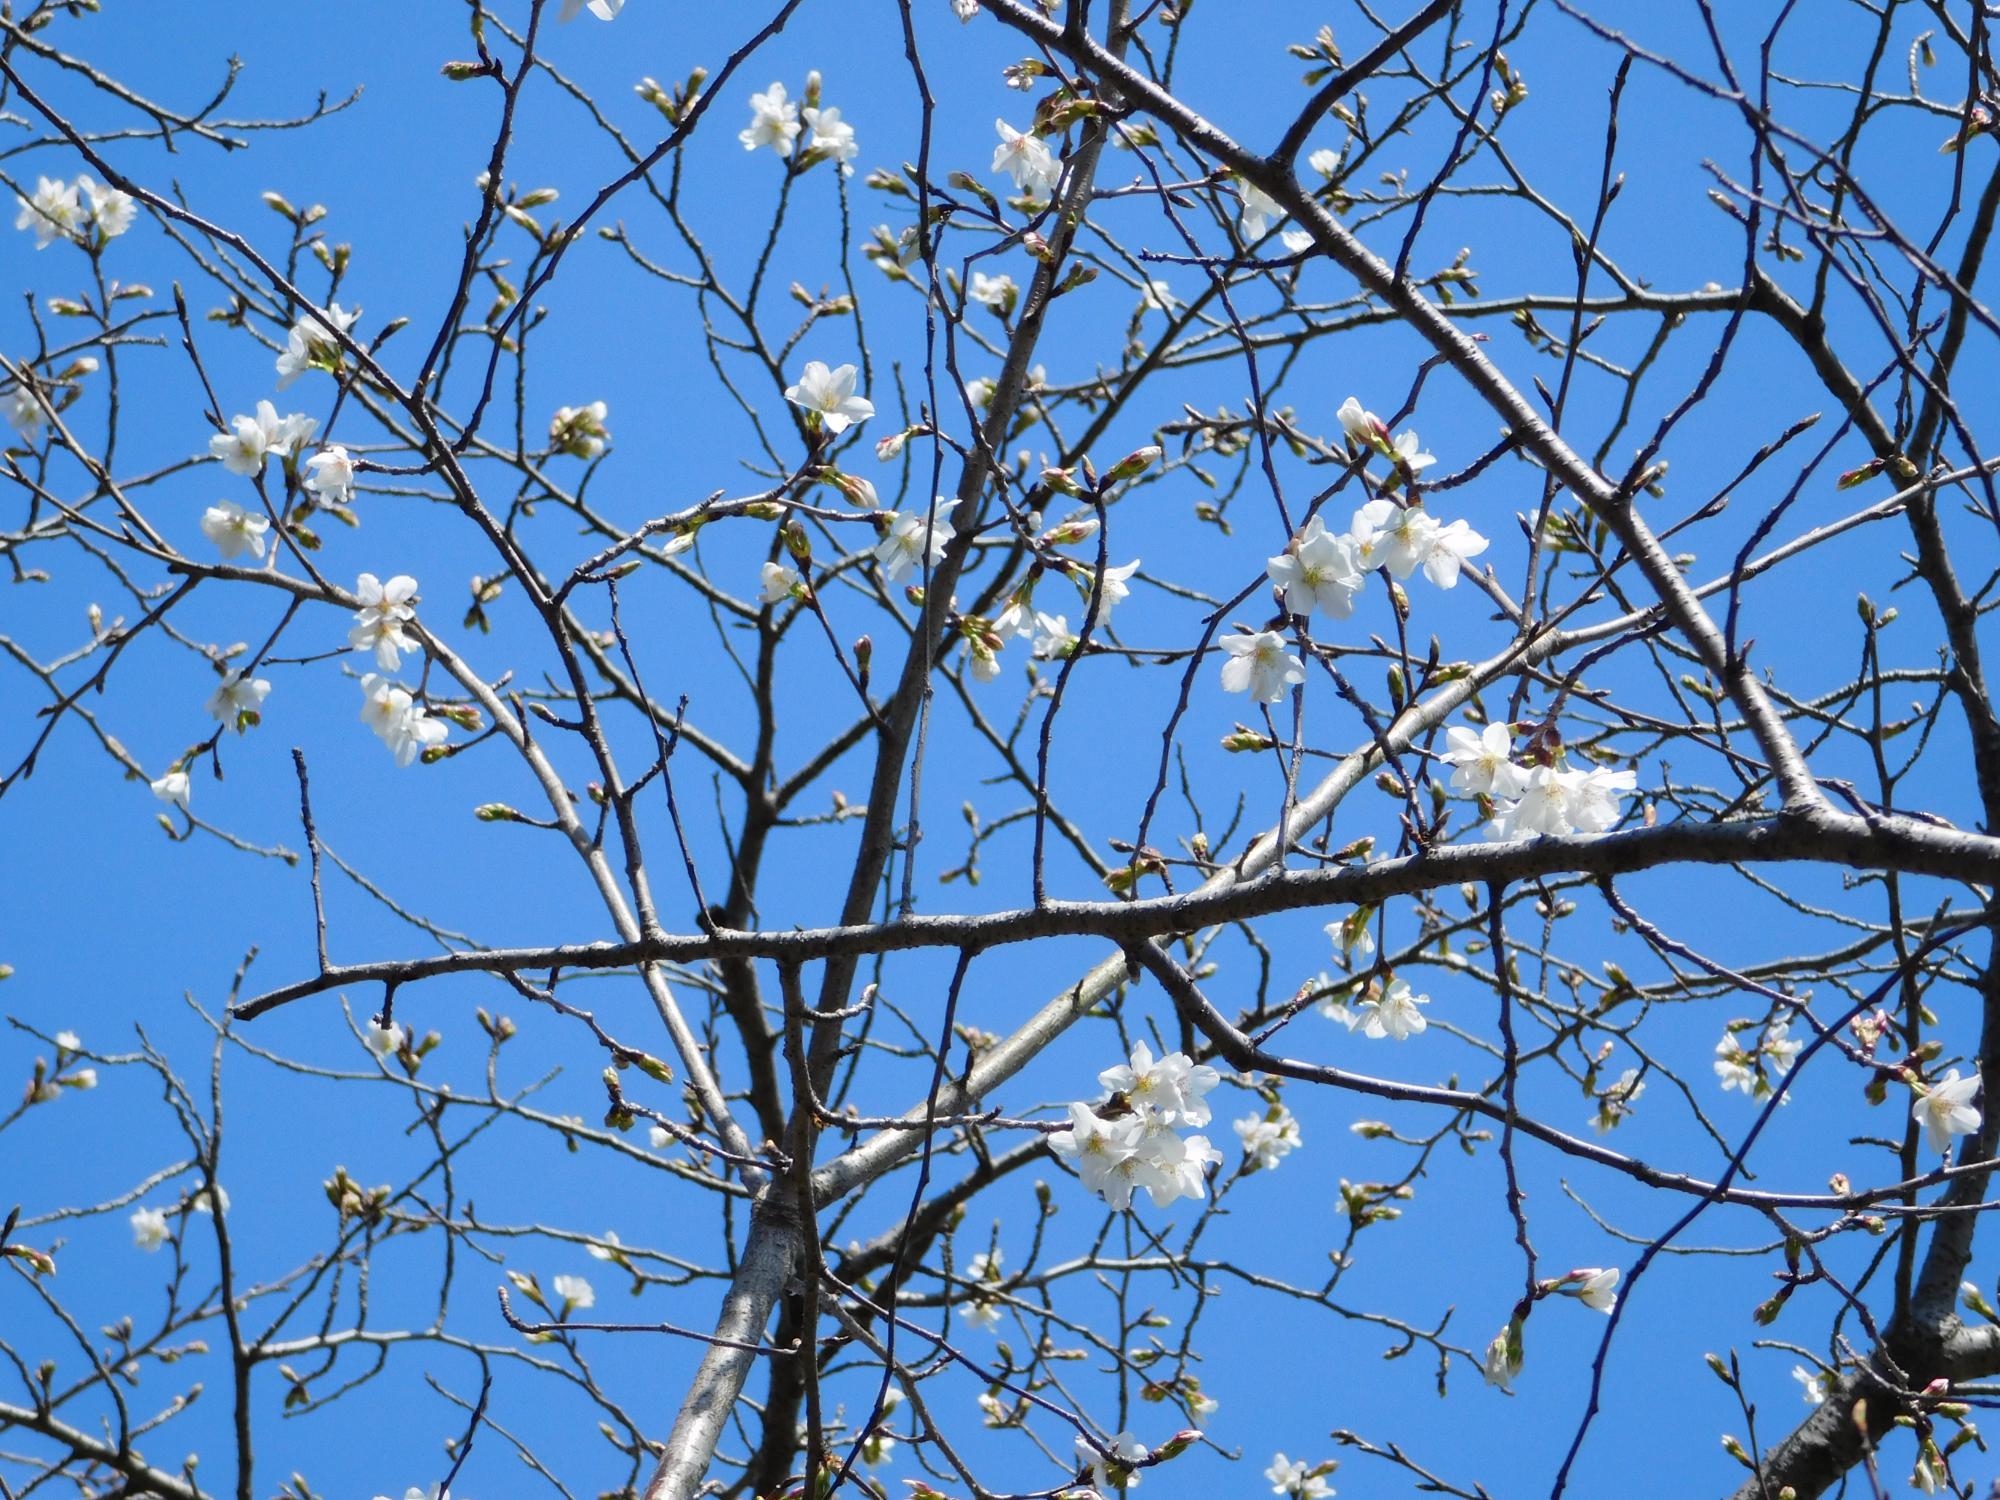 プレーパーク近くの沿道沿いのオオシマザクラです。花が咲いたのは、まだ1本のみですがこれから咲いてきます。花は白です。